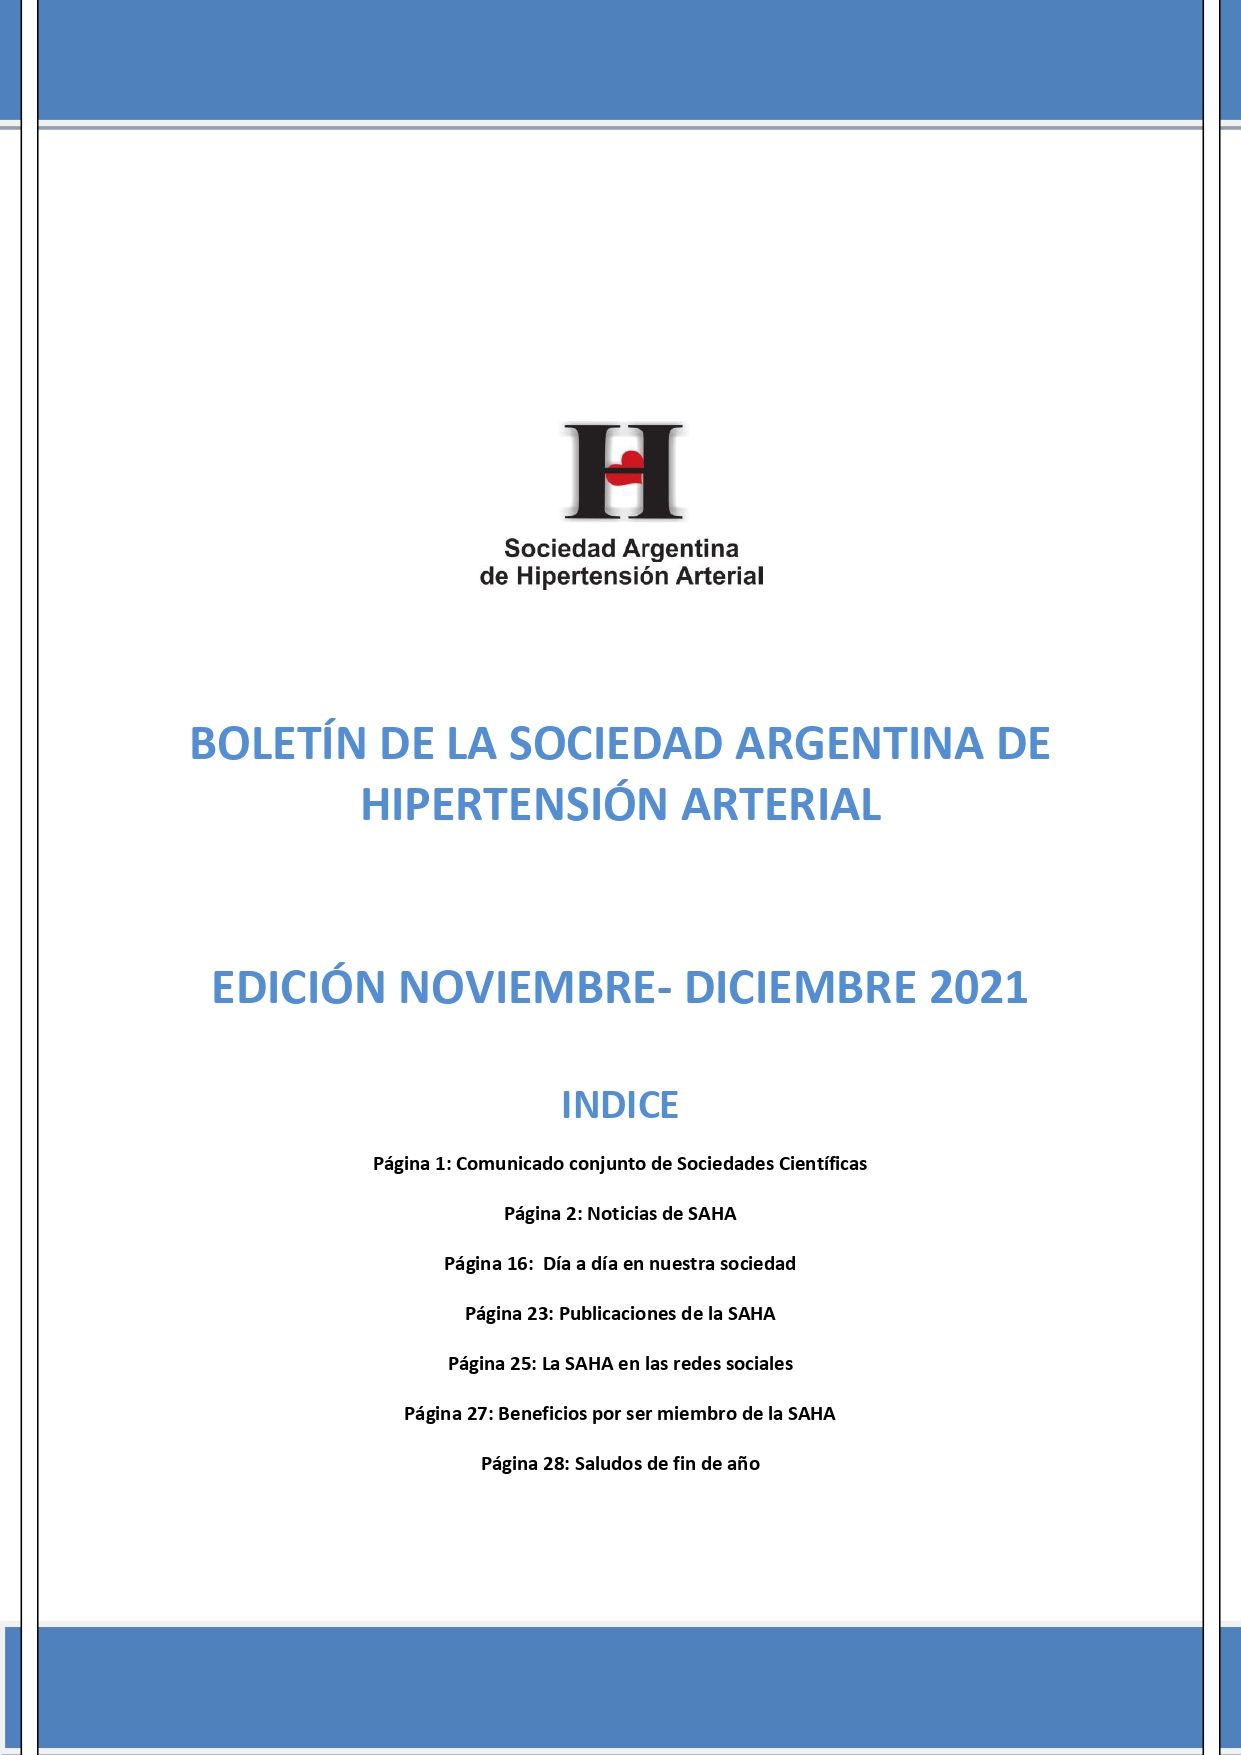 Boletín Periódico Sociedad Argentina de Hipertensión Arterial Noviembre - Diciembre 2021